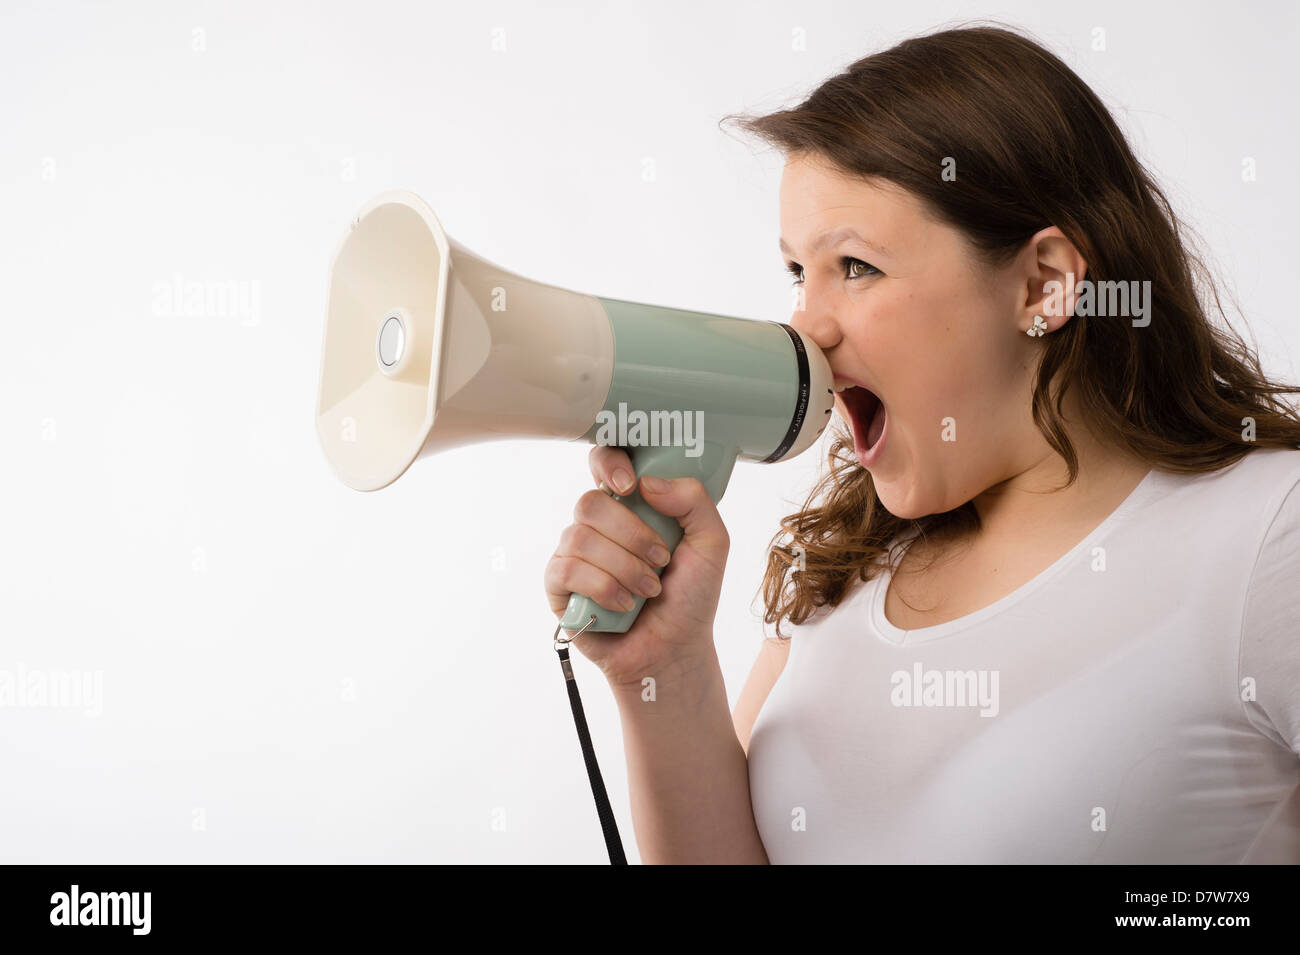 Une jeune brunette young Caucasian girl crier hurler crier faire grand bruit dans un mégaphone corne de taureau Banque D'Images